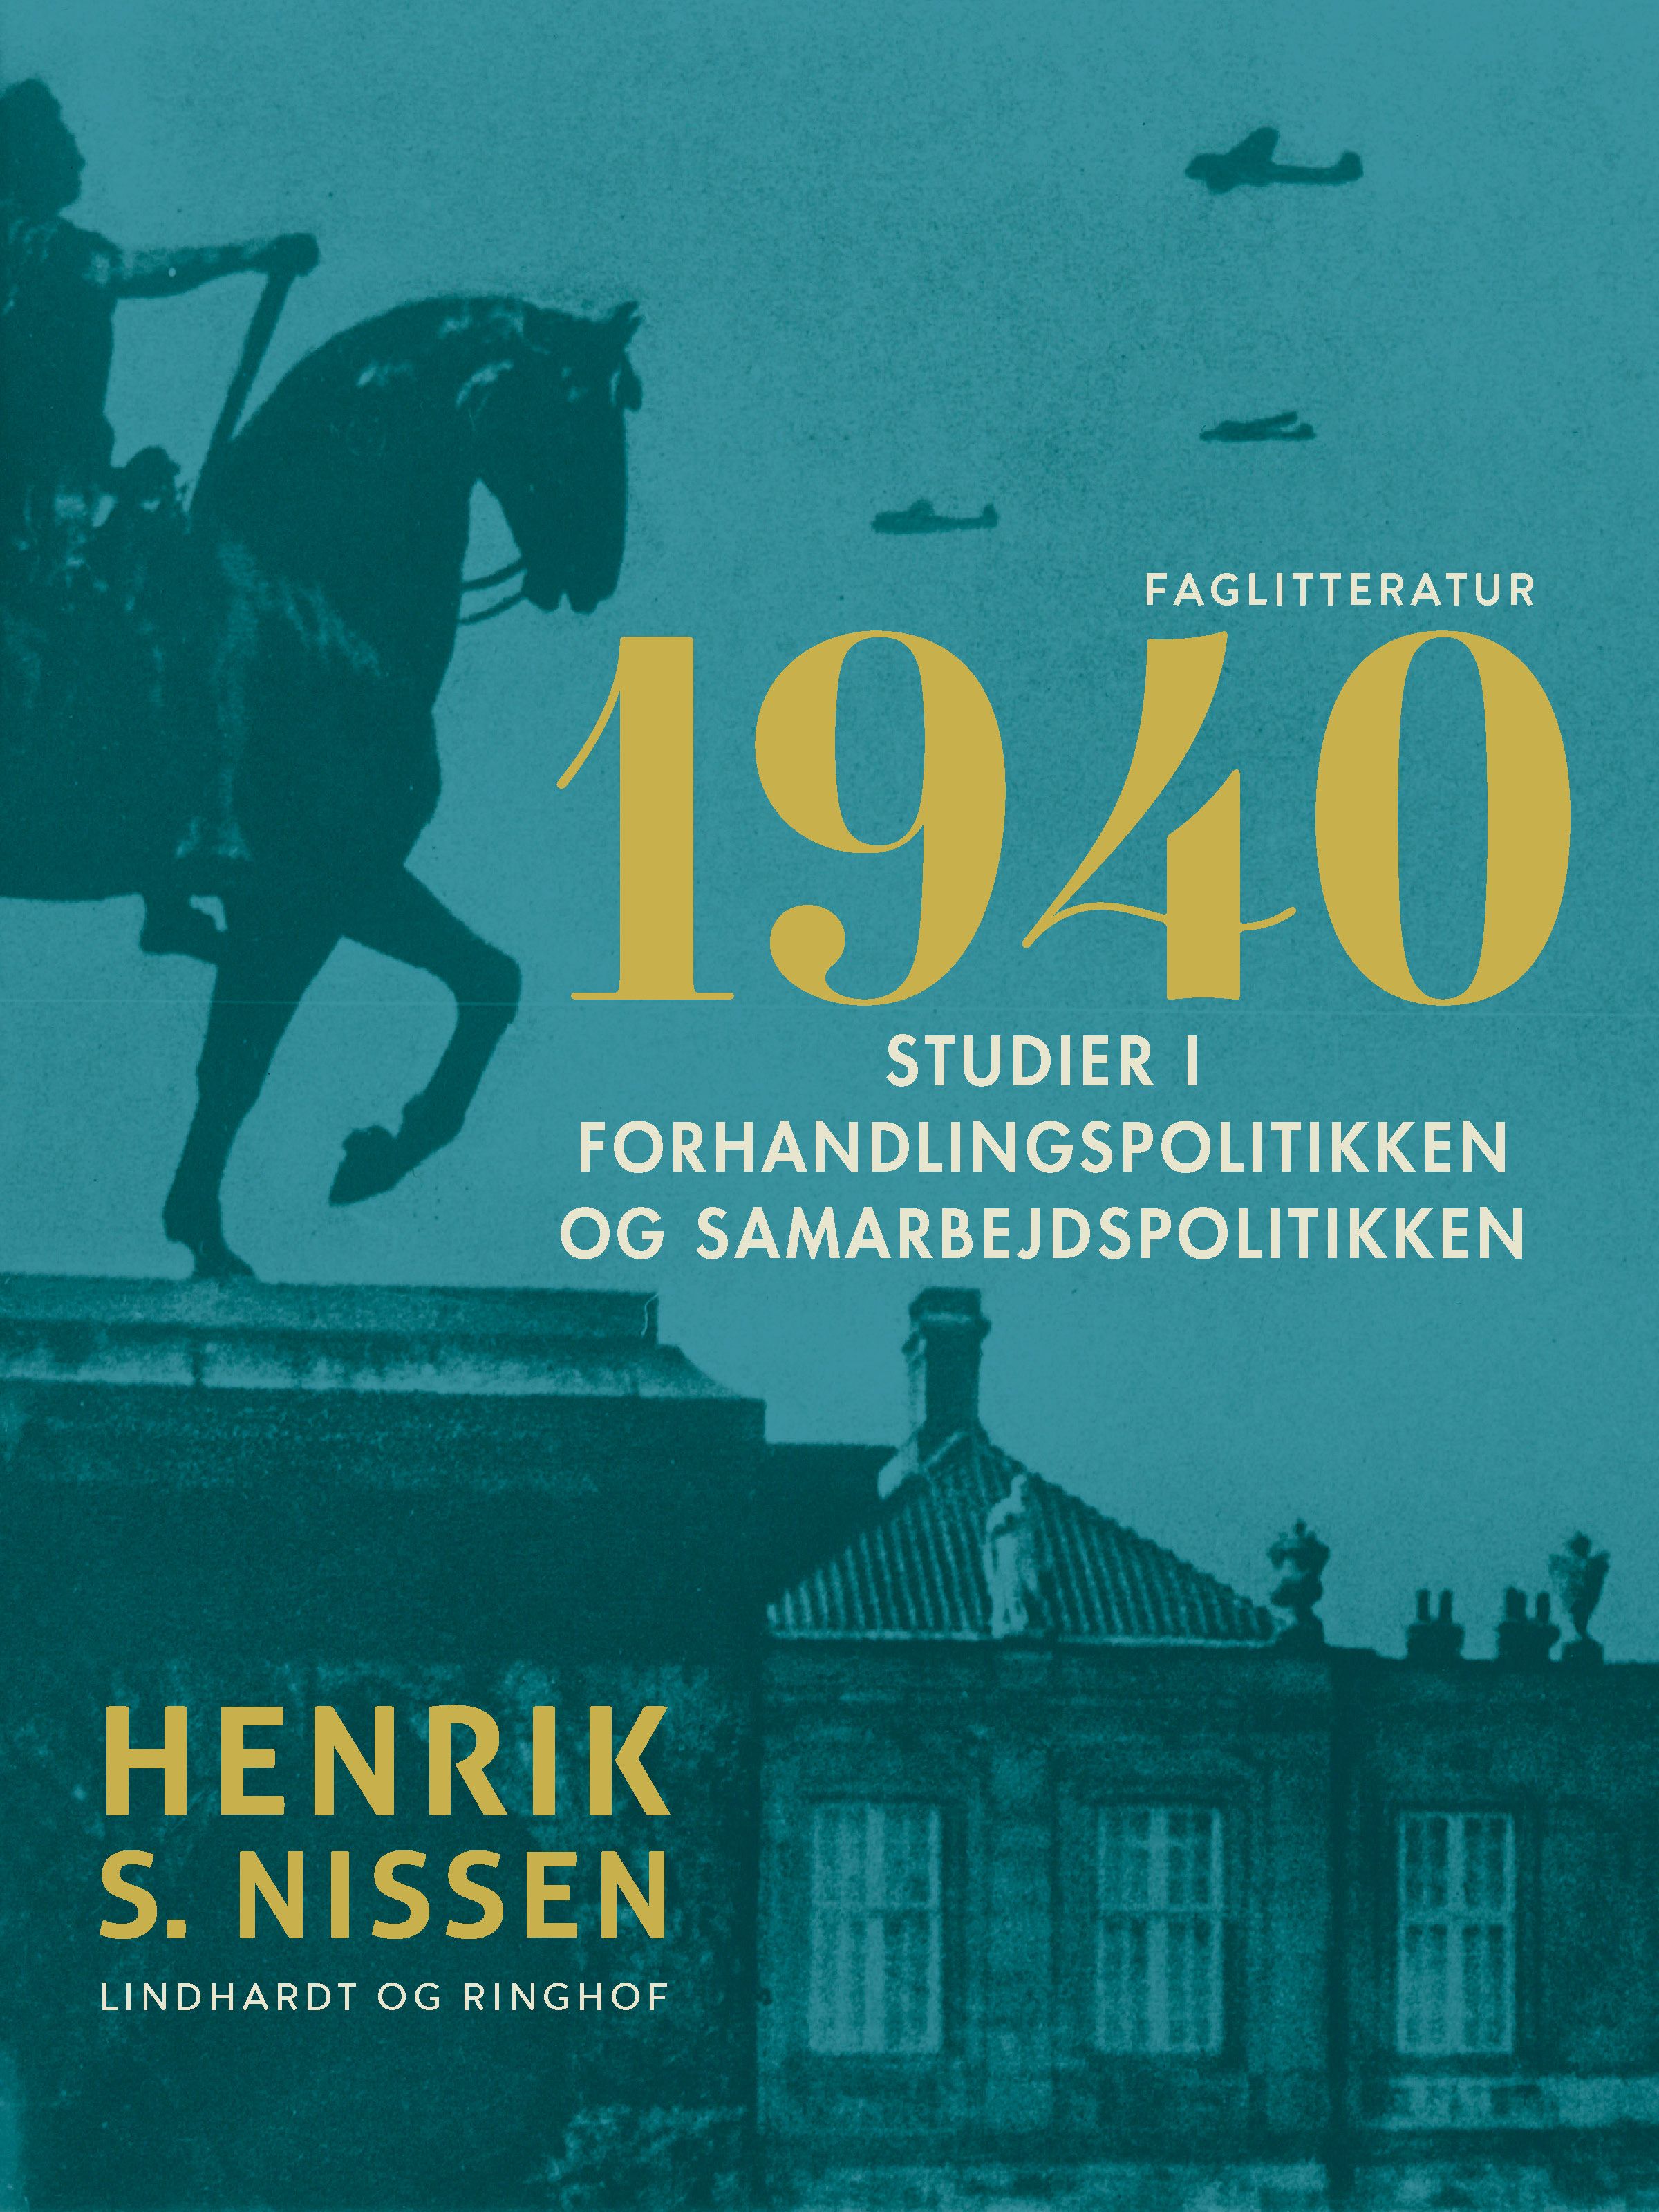 1940. Studier i forhandlingspolitikken og samarbejdspolitikken, e-bok av Henrik S. Nissen